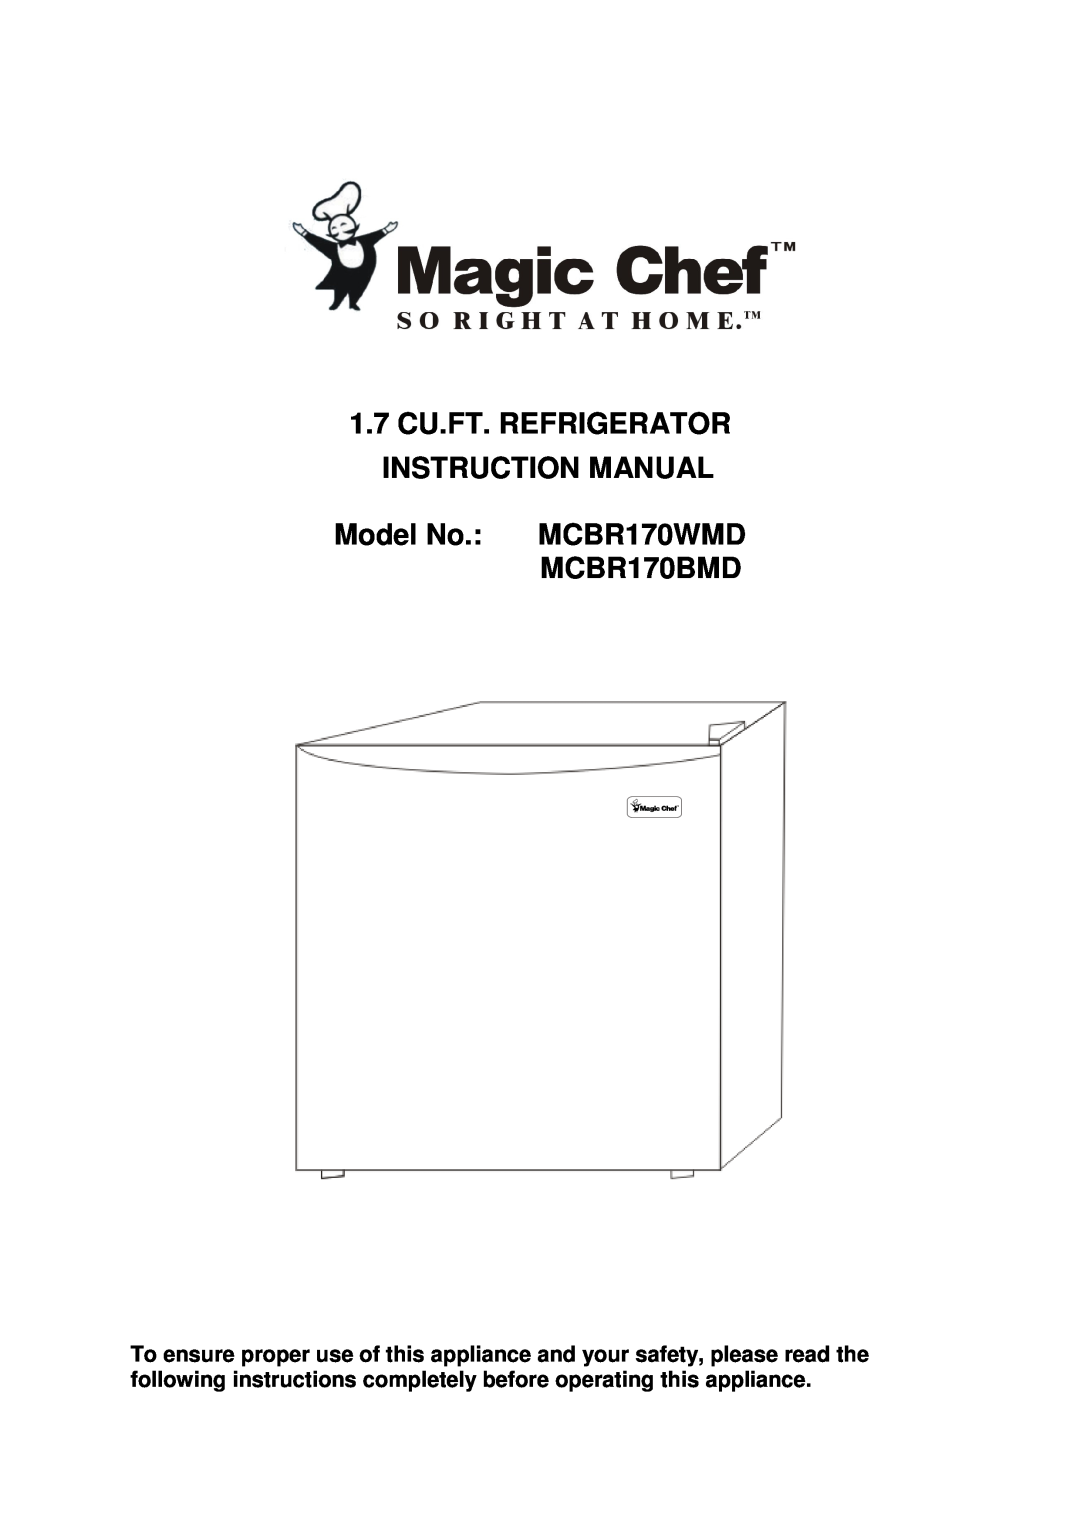 Magic Chef instruction manual Model No. MCBR170WMD MCBR170BMD 